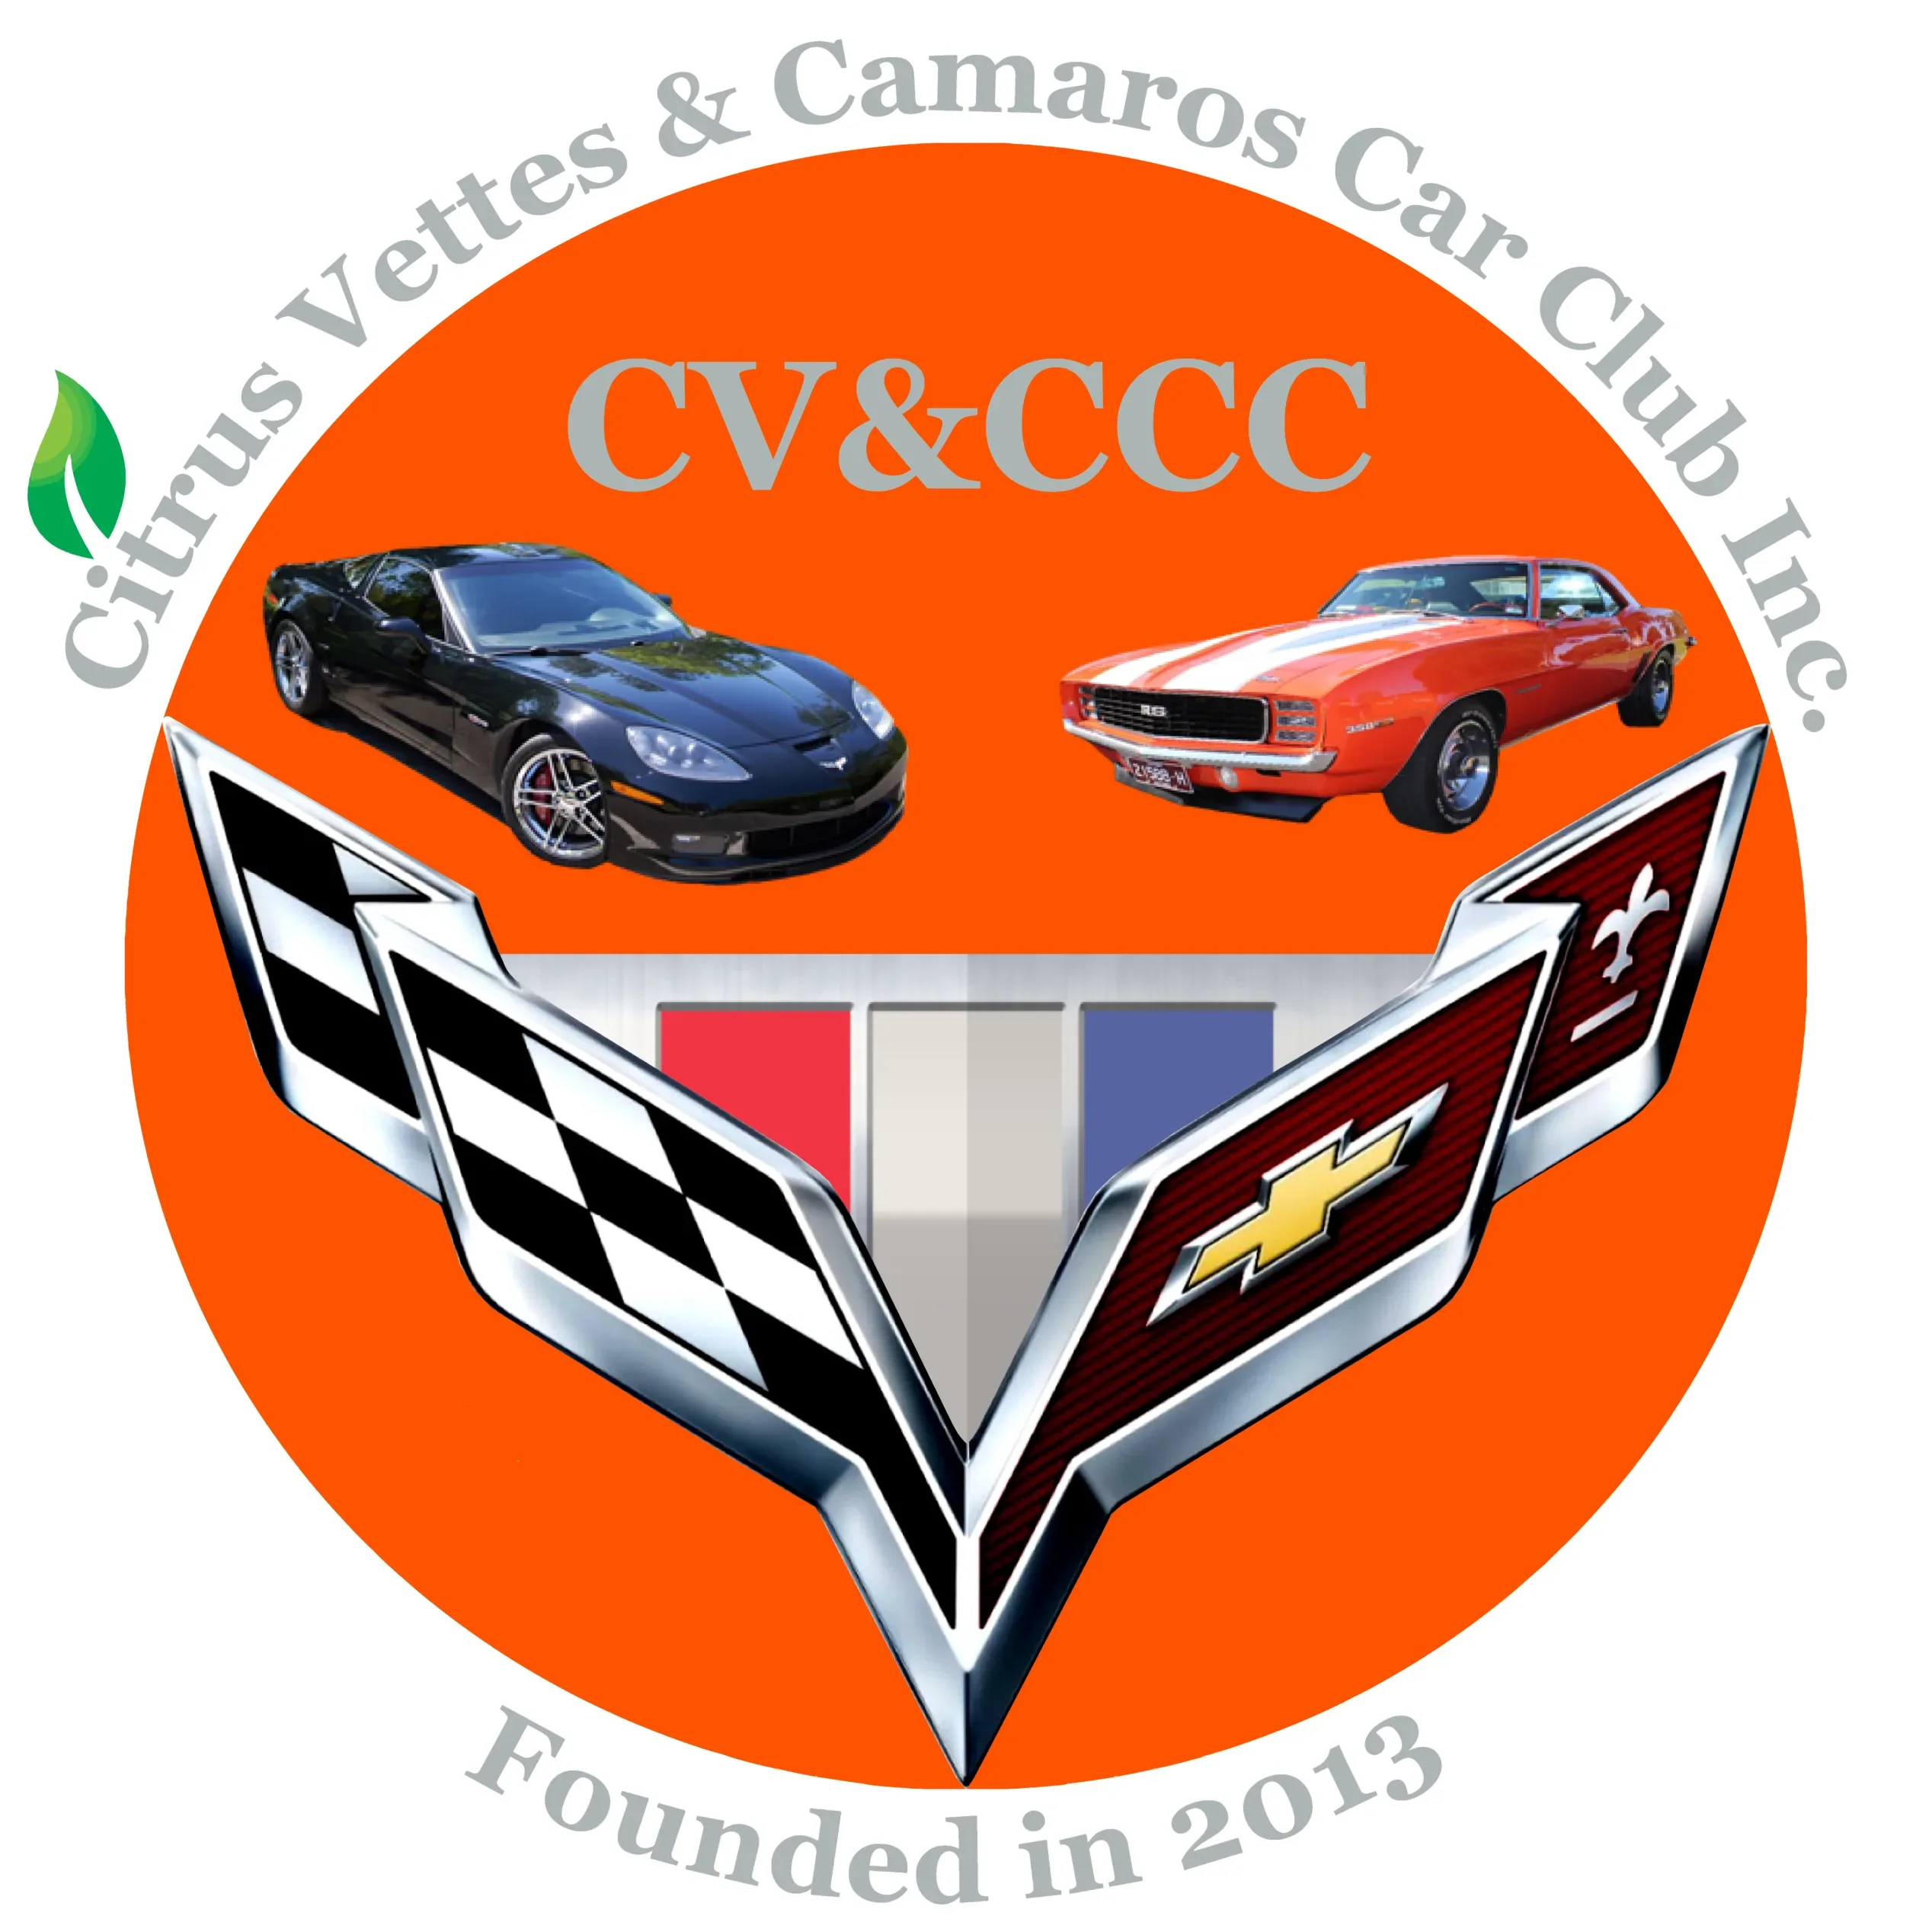 CV&CCC Round Window Sticker